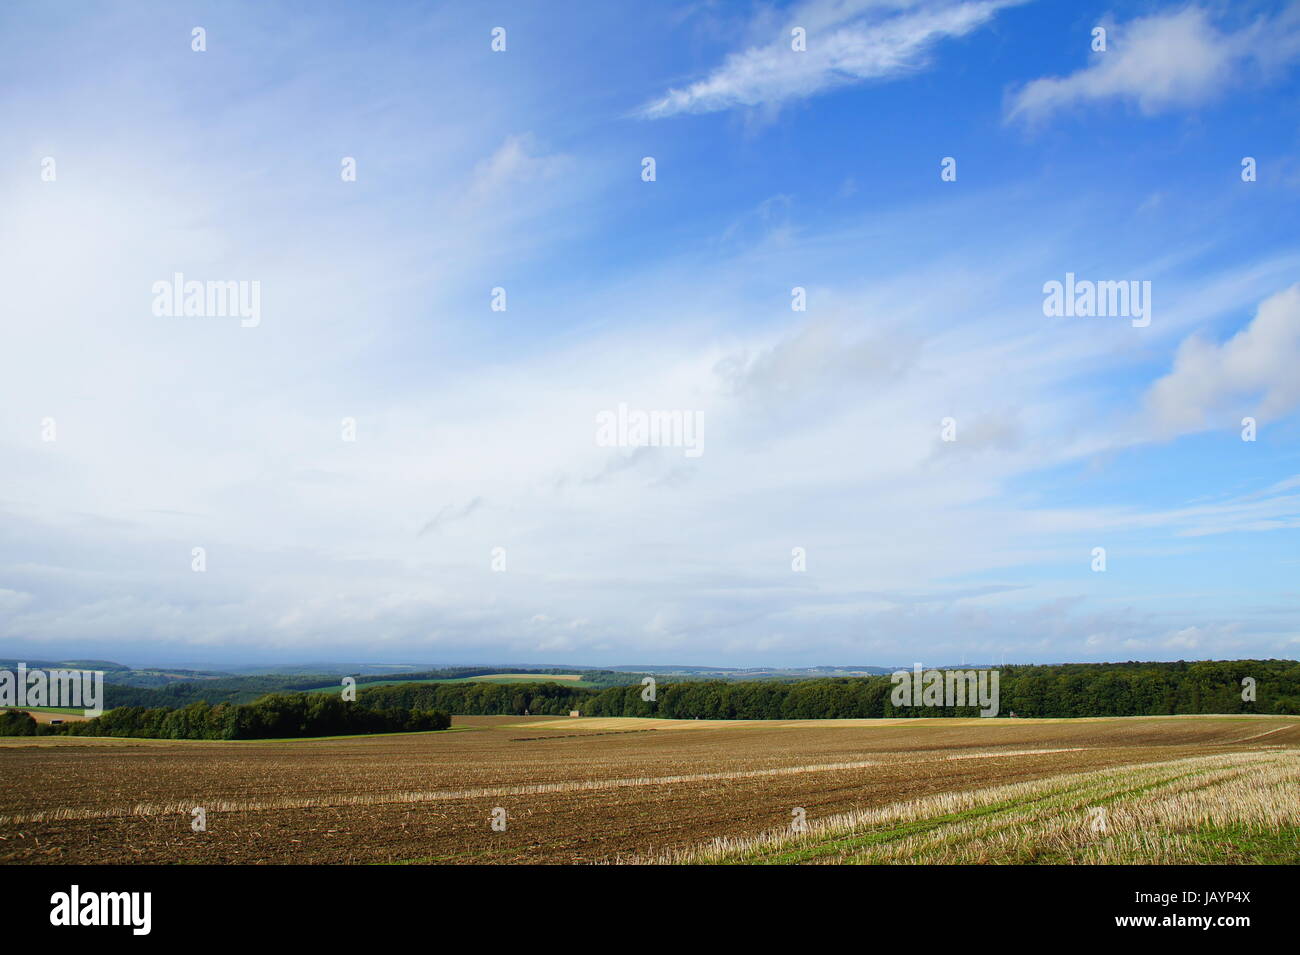 Himmel über abgeernteten Feldern Stock Photo